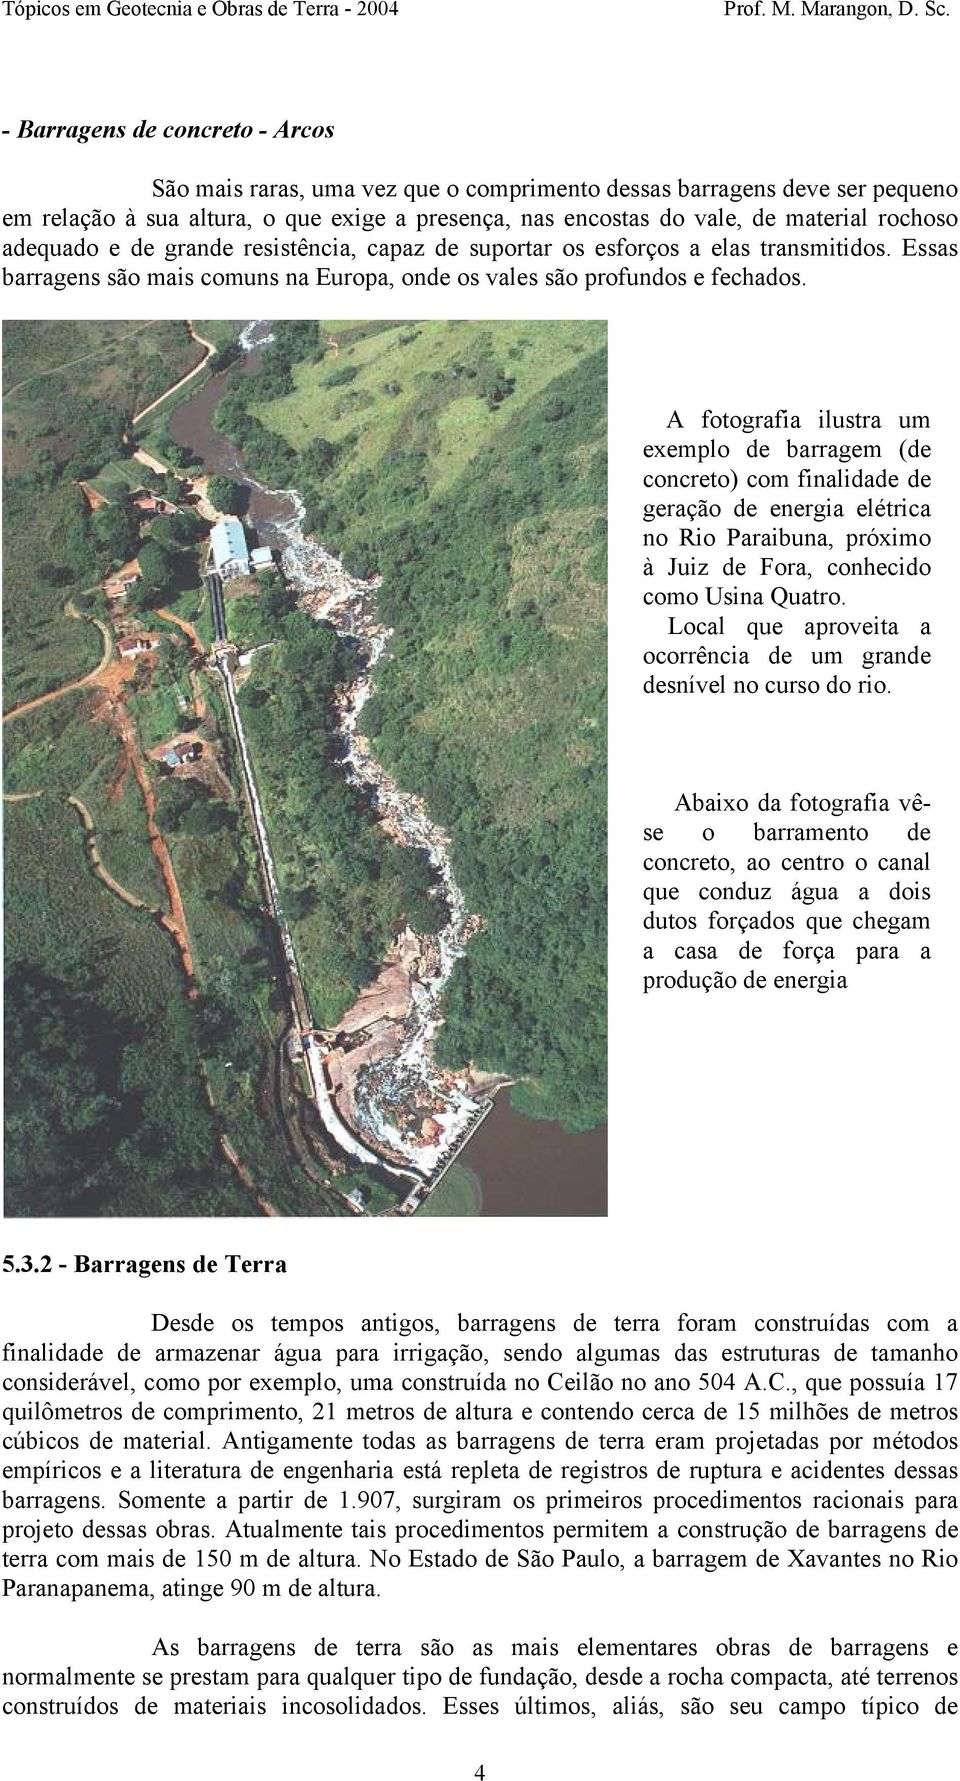 A fotografia ilustra um exemplo de barragem (de concreto) com finalidade de geração de energia elétrica no Rio Paraibuna, próximo à Juiz de Fora, conhecido como Usina Quatro.